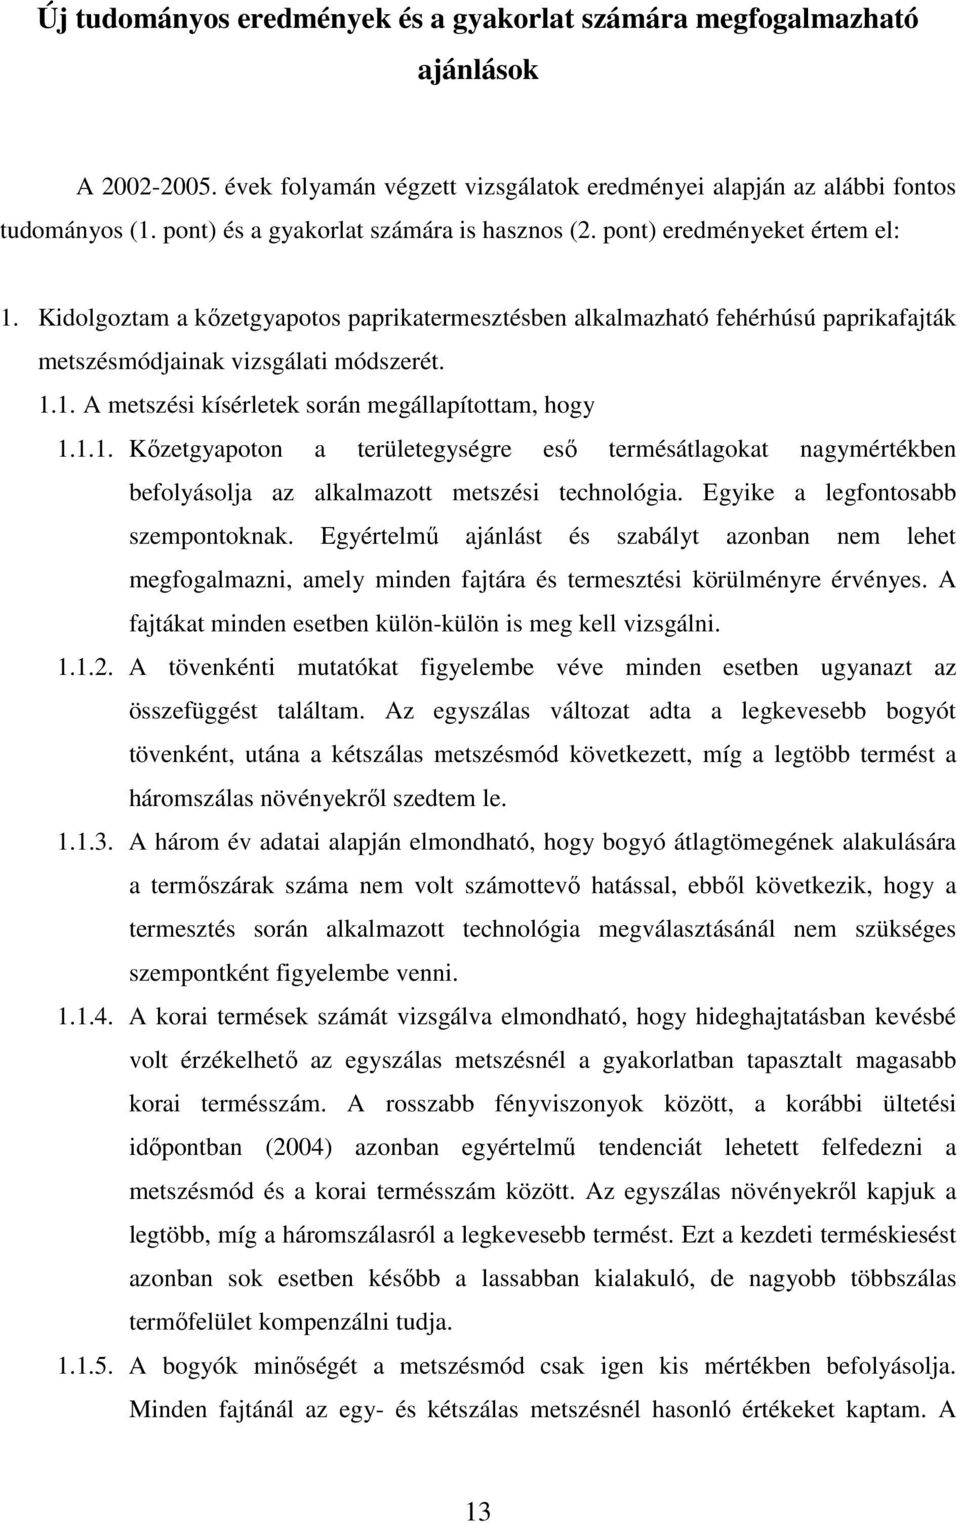 1.1. A metszési kísérletek során megállapítottam, hogy 1.1.1. Kızetgyapoton a területegységre esı termésátlagokat nagymértékben befolyásolja az alkalmazott metszési technológia.